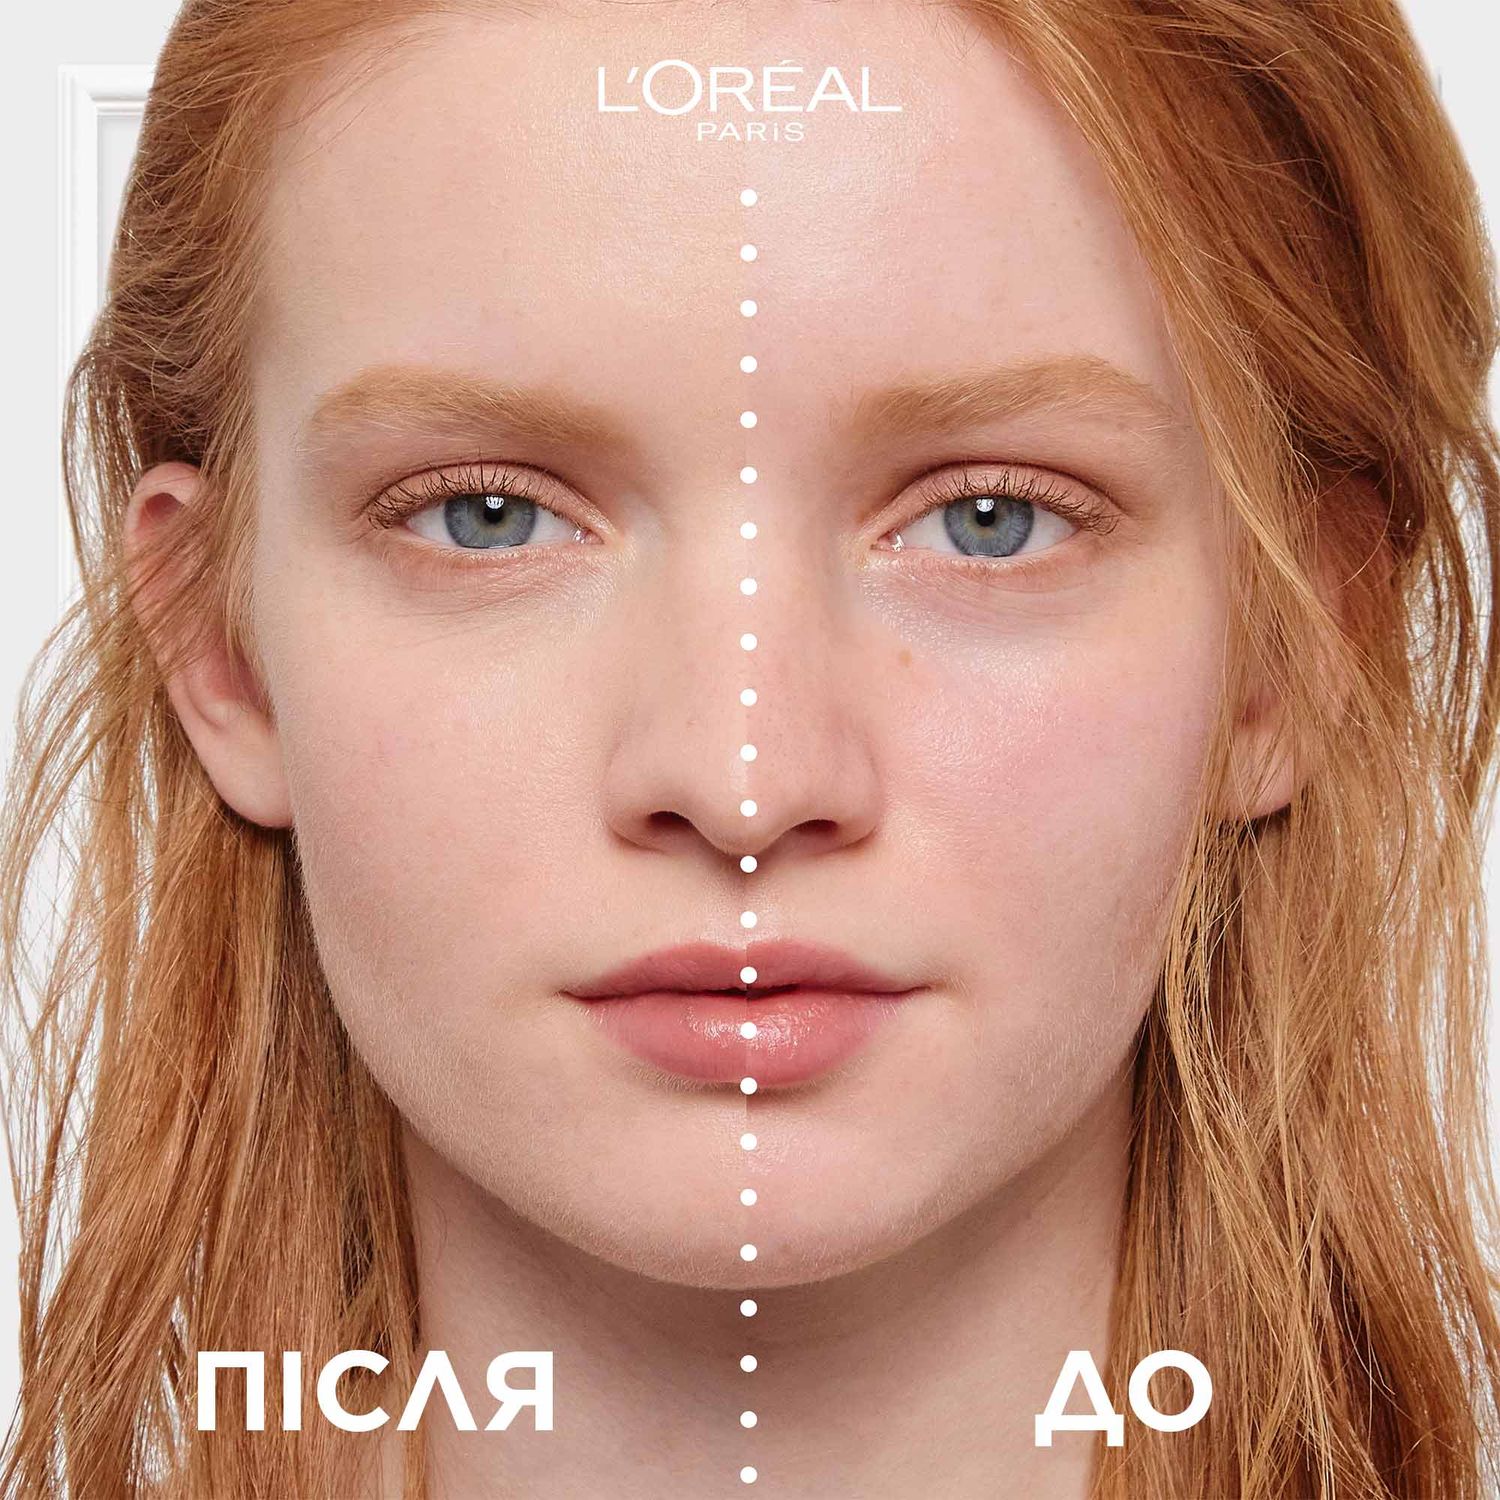 ВВ-крем для лица L’Oréal Paris C'est Magic 5в1, тон 03 (Бежевый), 30 мл (A9827700) - фото 2